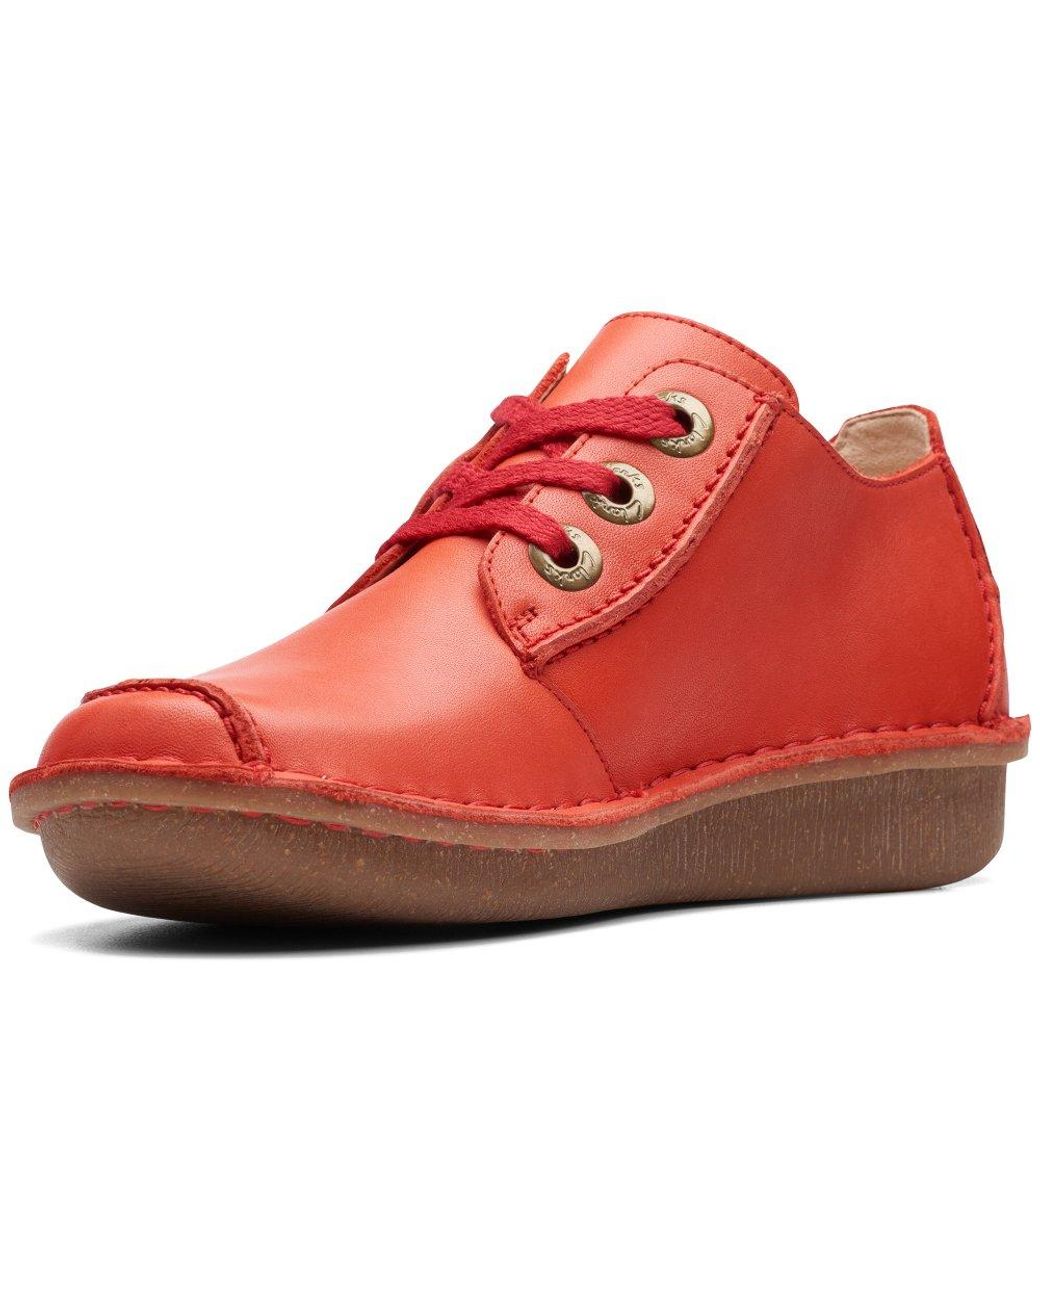 Sandet Mere end noget andet røg Clarks Funny Dream Shoes in Red | Lyst Australia